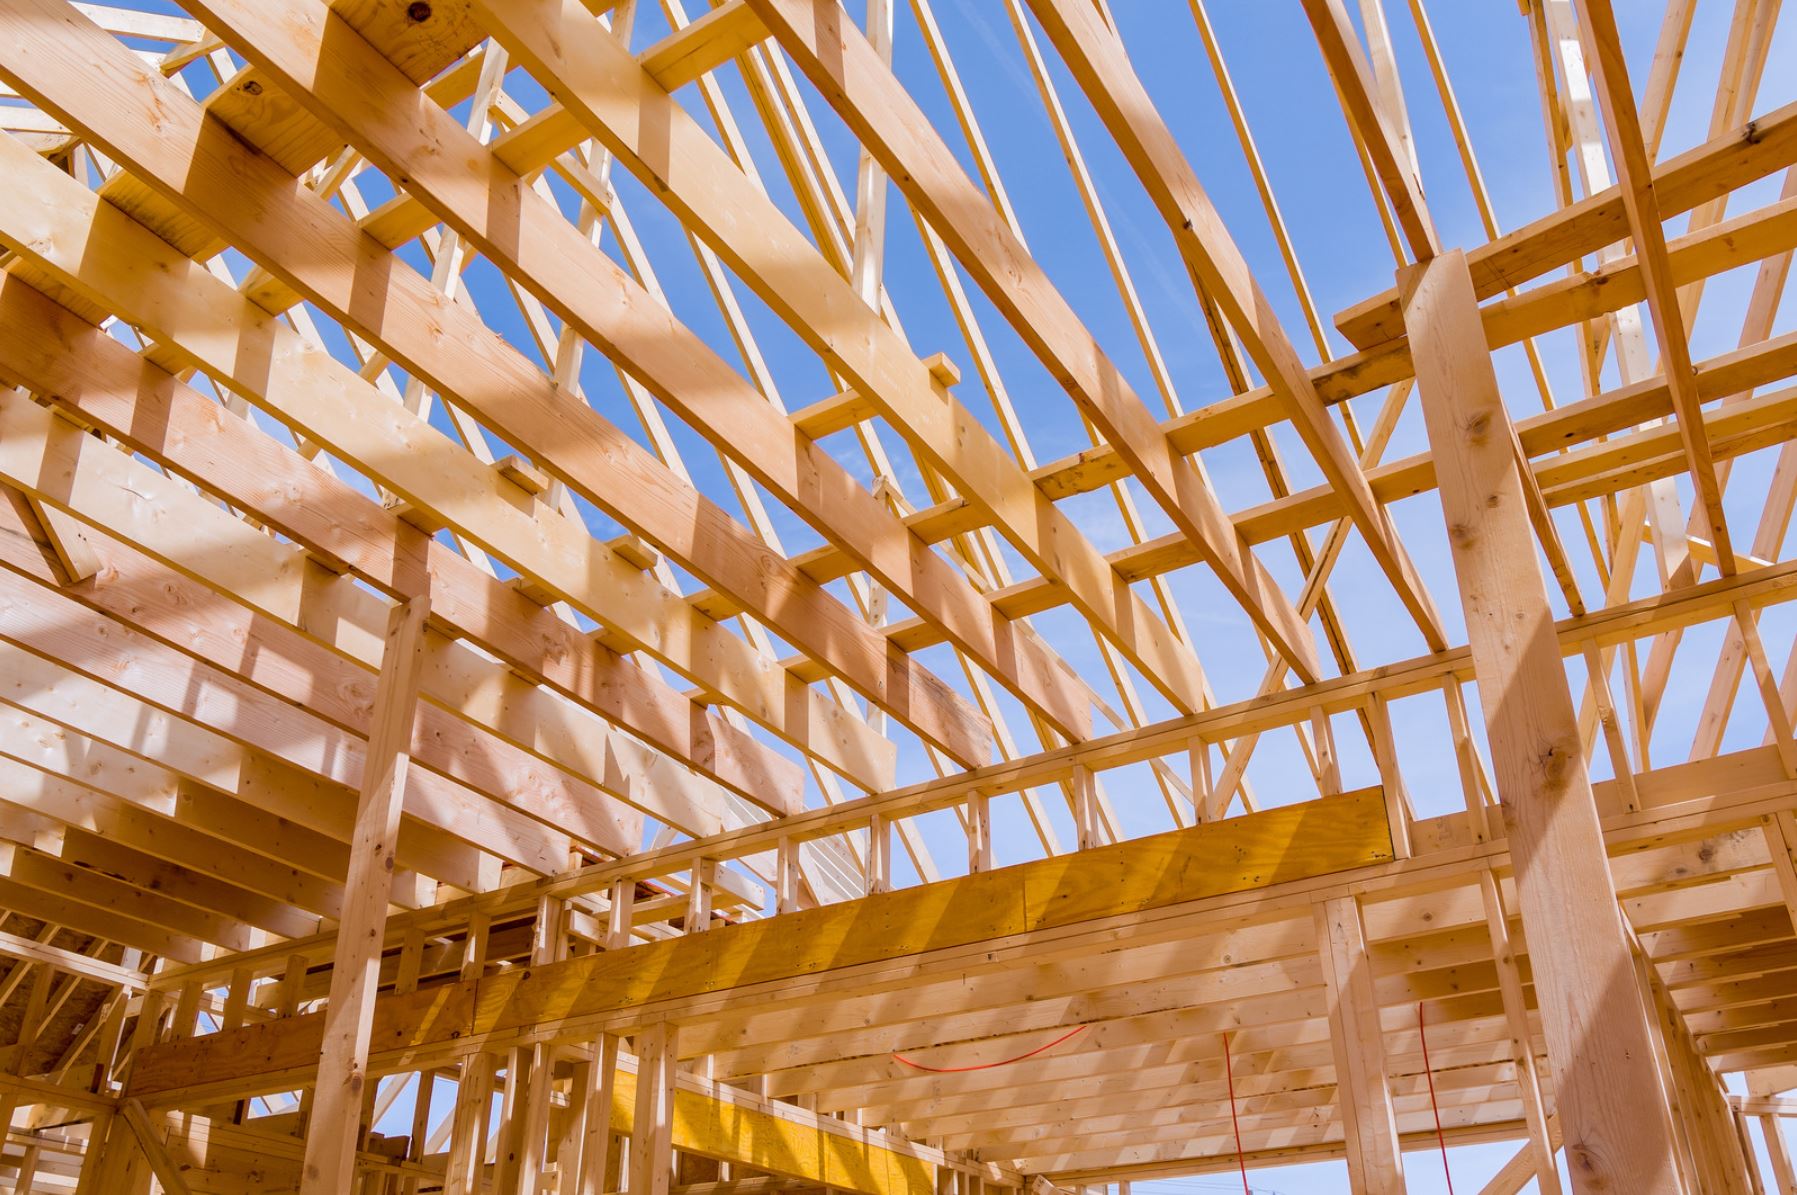 Drewno konstrukcyjne – sprawdzamy jego najpopularniejsze rodzaje